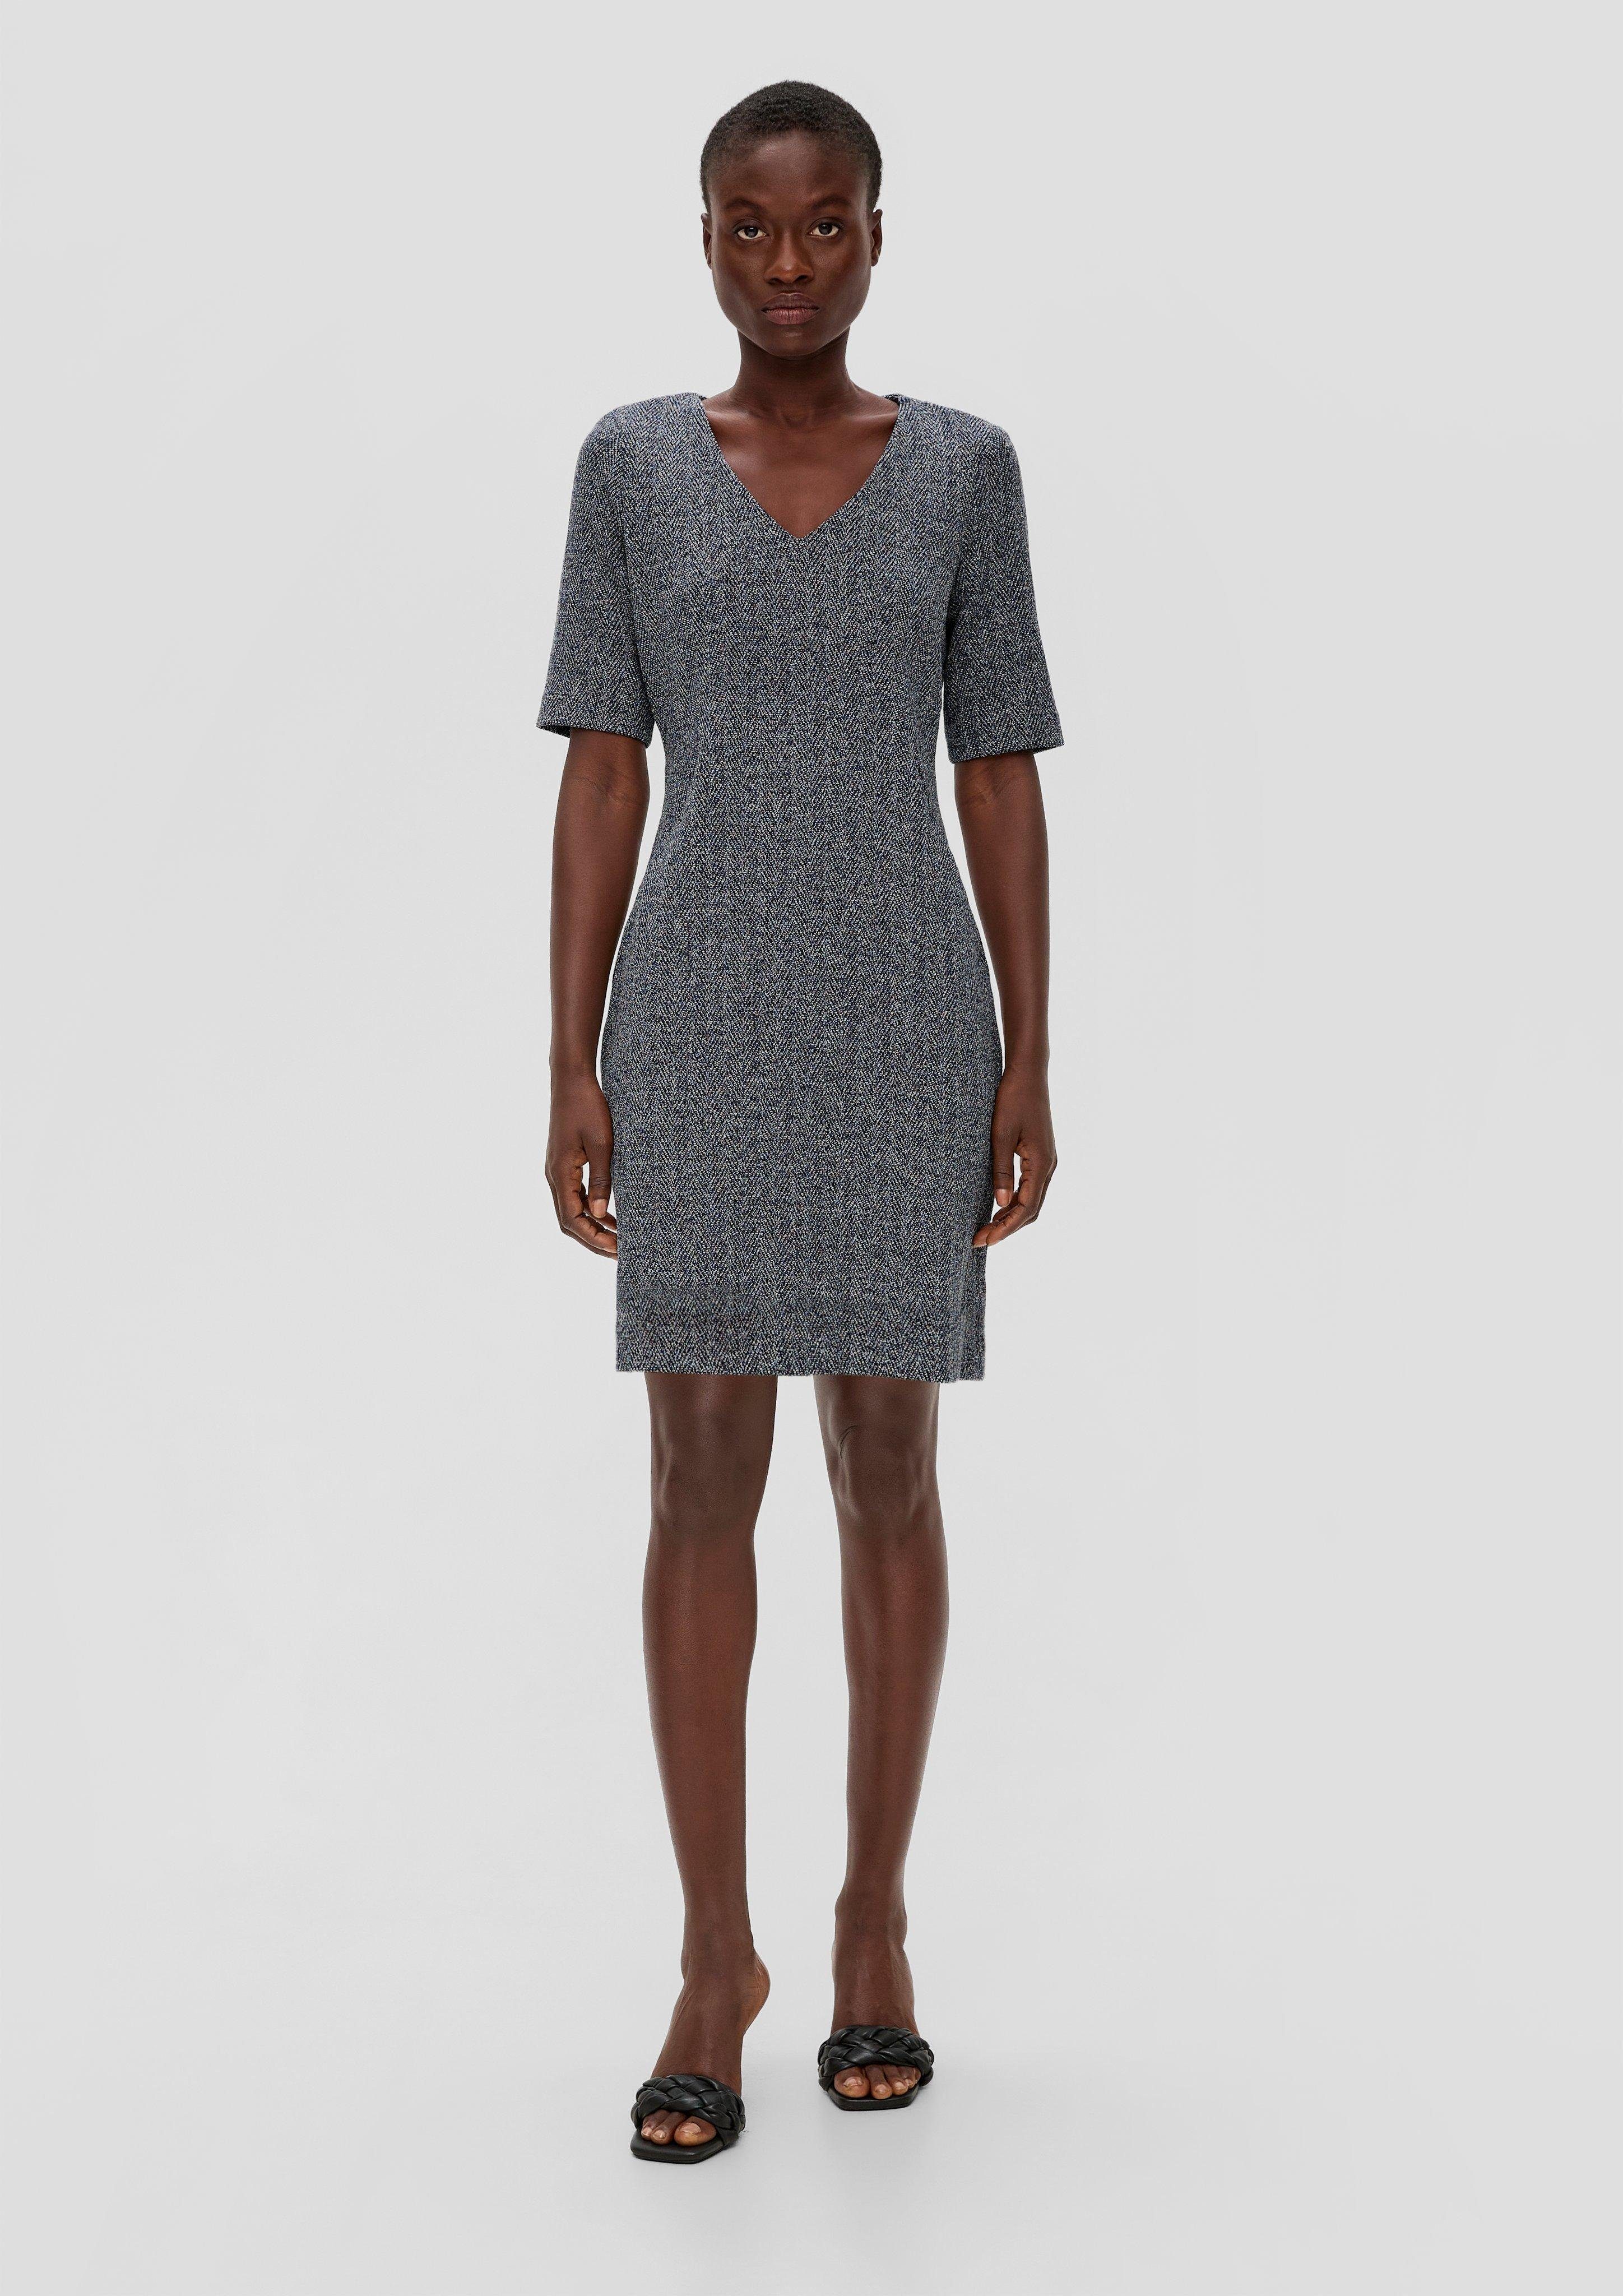 Interlockjersey-Kleid mit Minikleid V-Ausschnitt LABEL s.Oliver BLACK